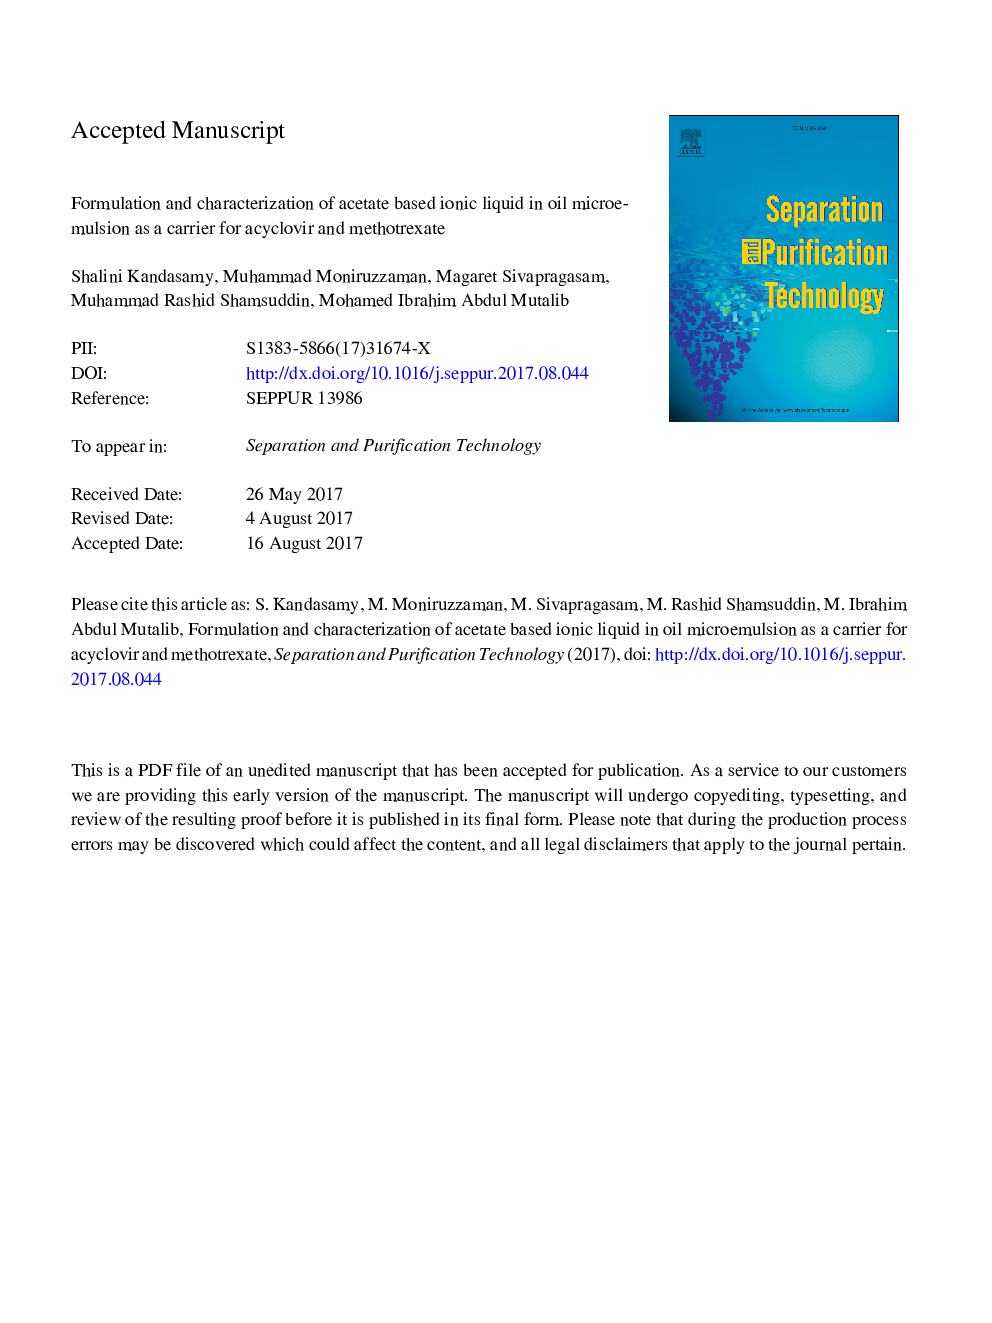 فرمولاسیون و ویژگی مایع یونی بر پایه استات در مایع امولسیون روغن به عنوان حامل آسیکلویر و متوترکسات 